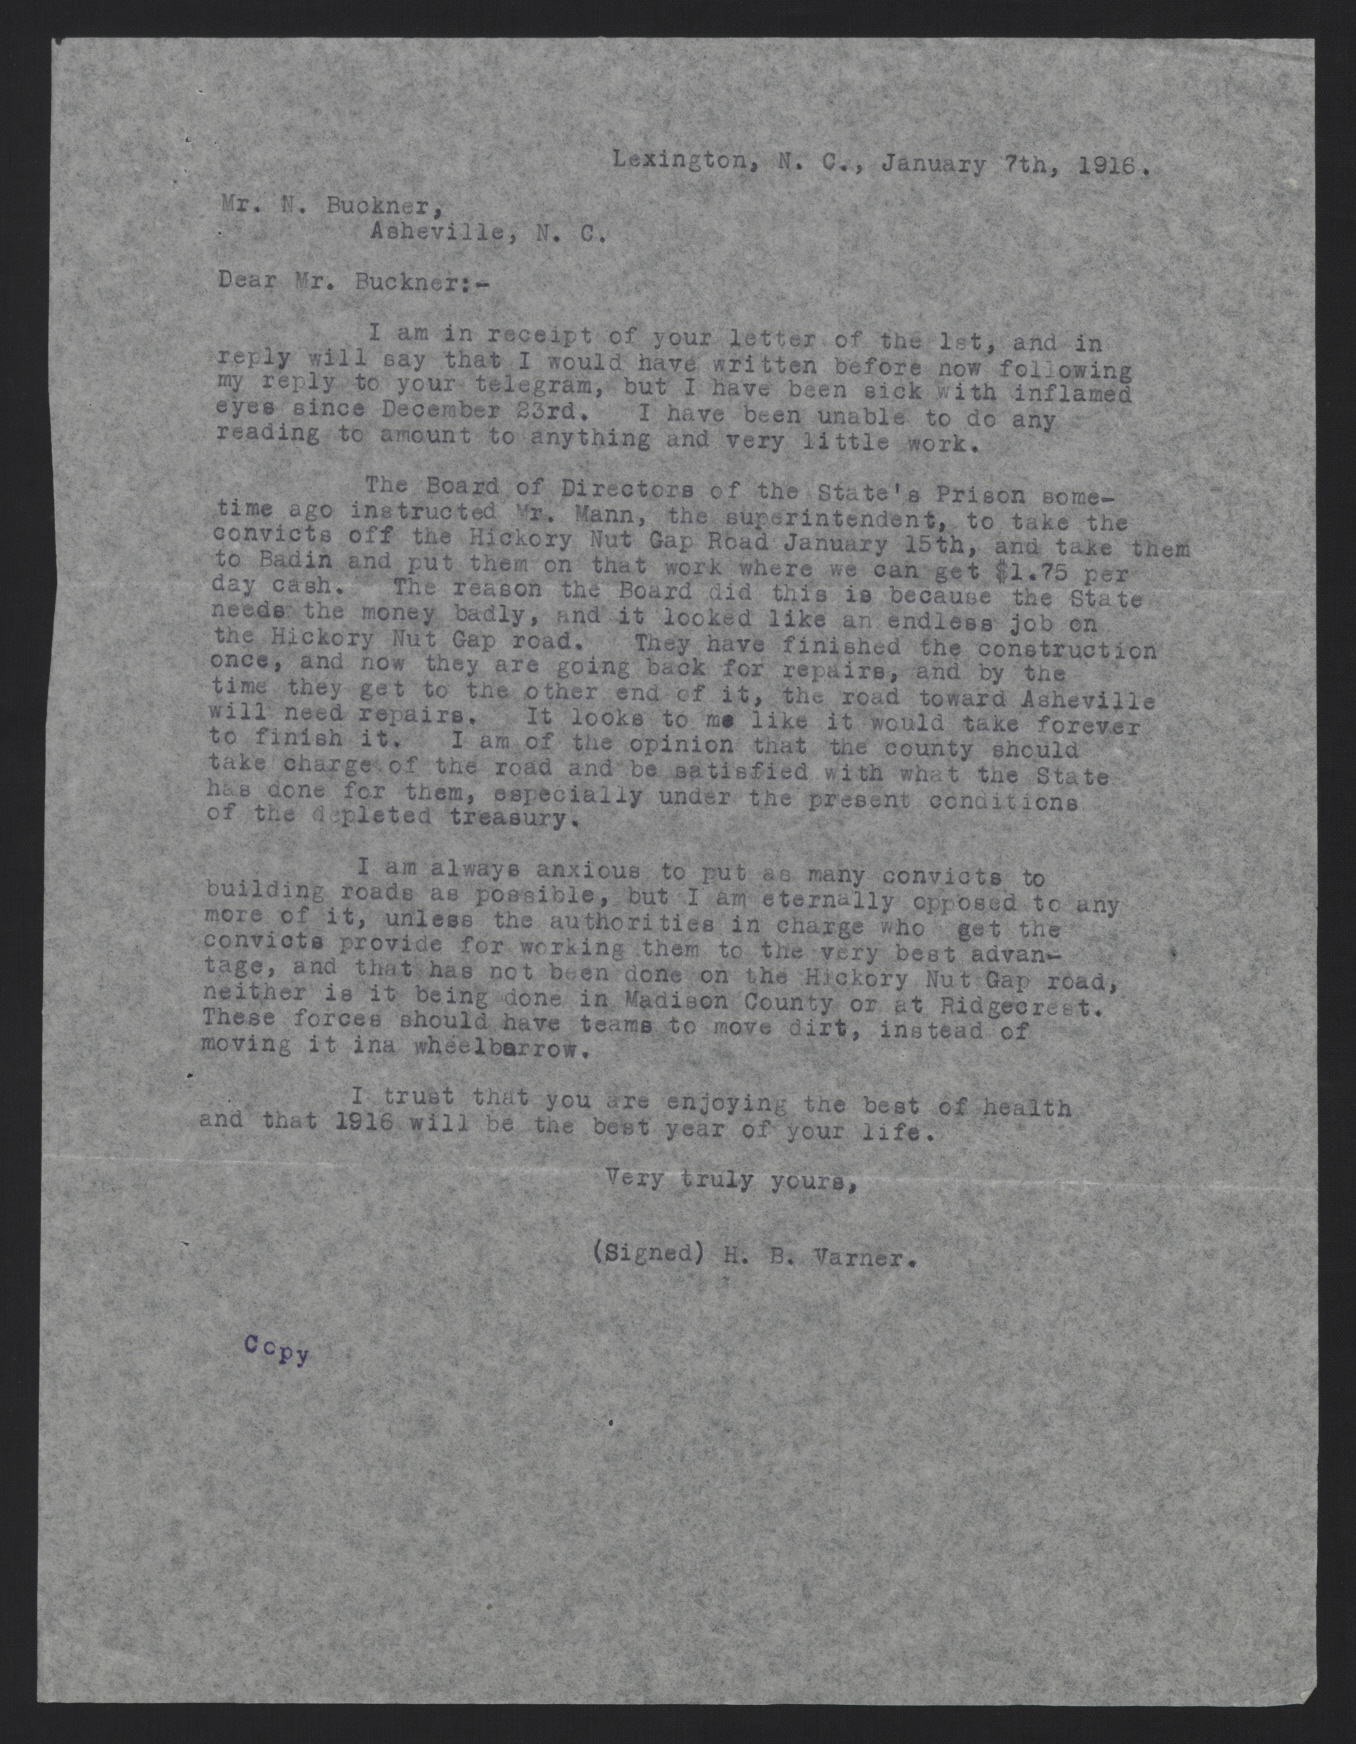 Letter from Varner to Buckner, January 7, 1916